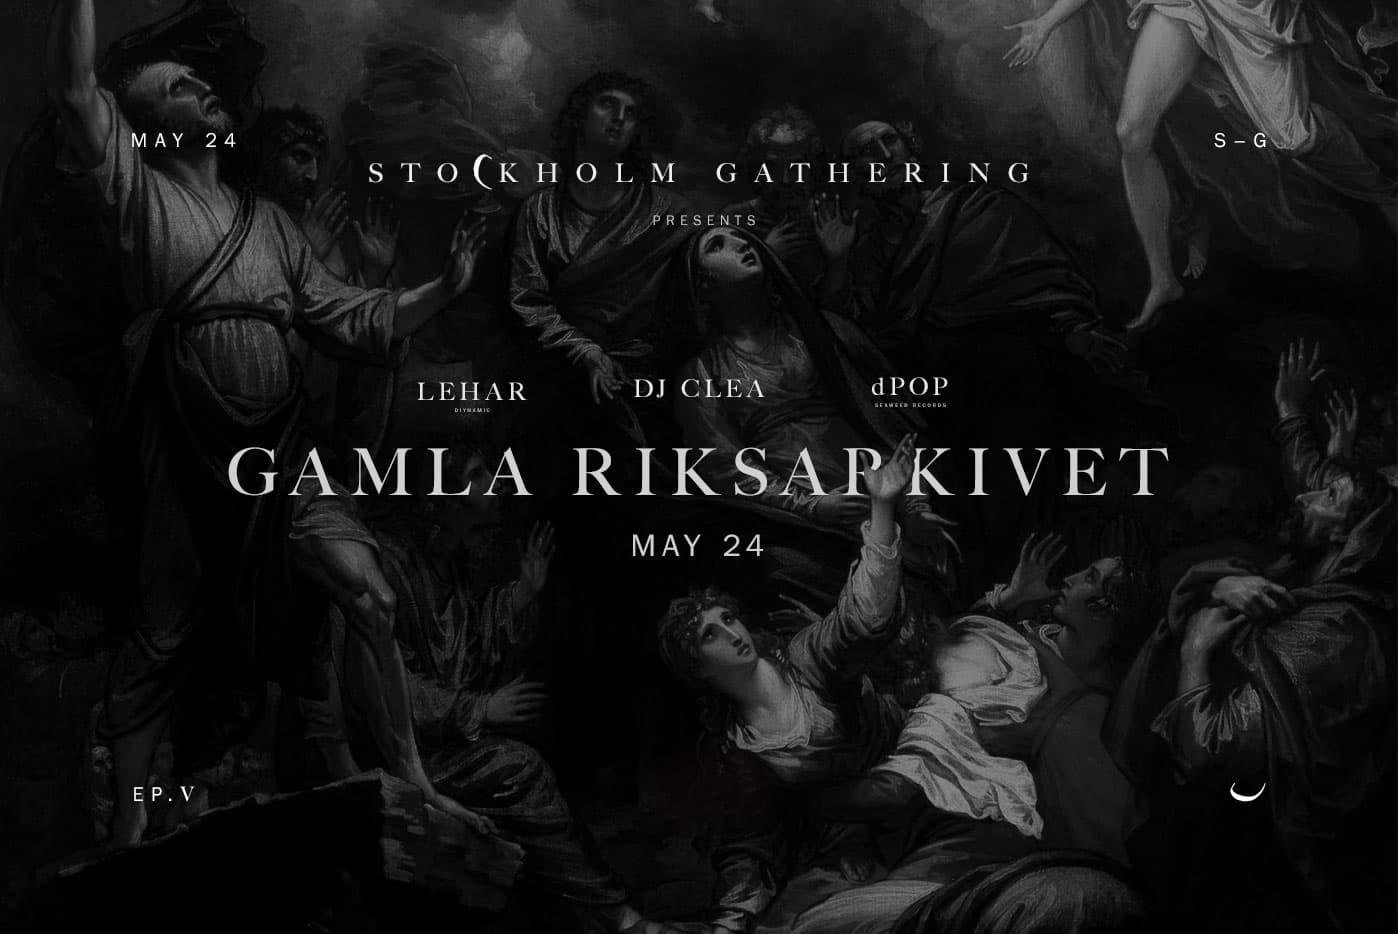 Stockholm Gathering intar Riksarkivets innergård